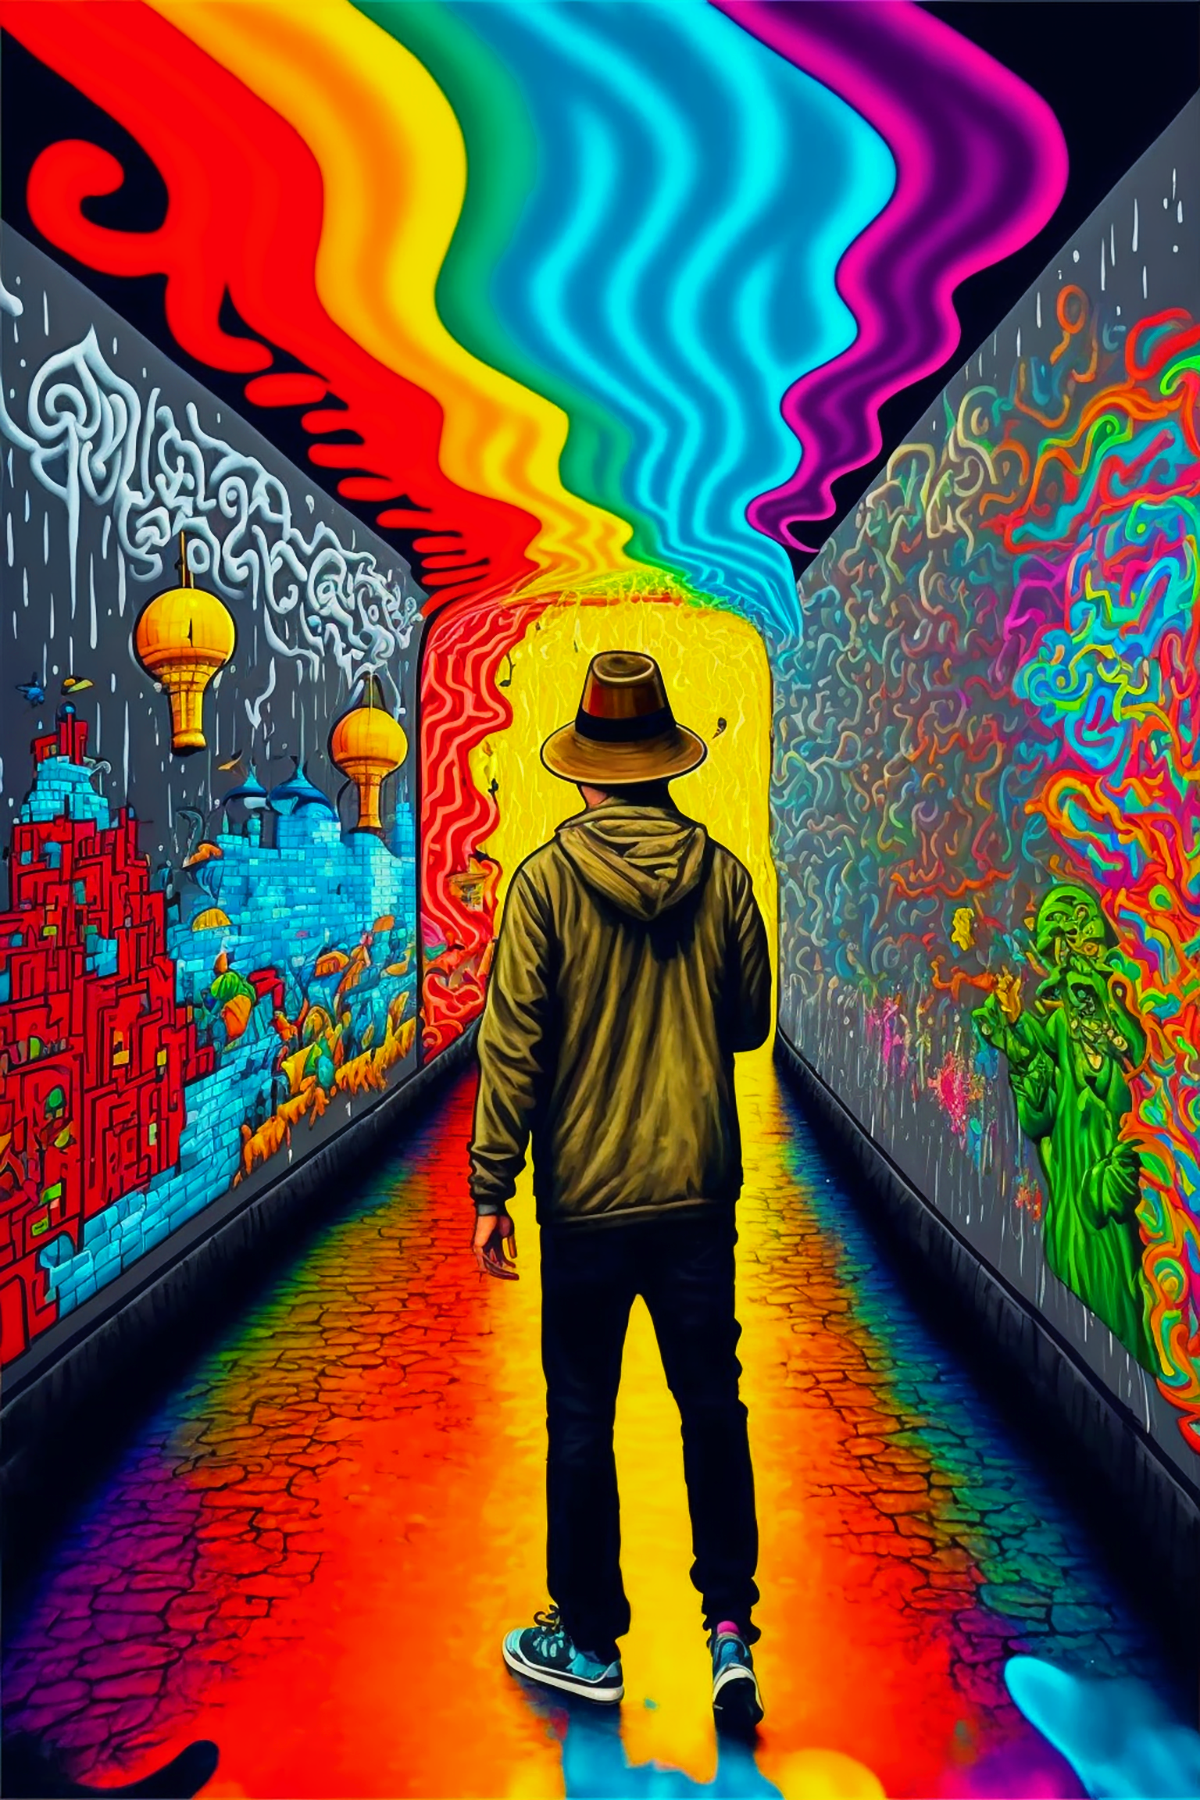 Alley of Dreams